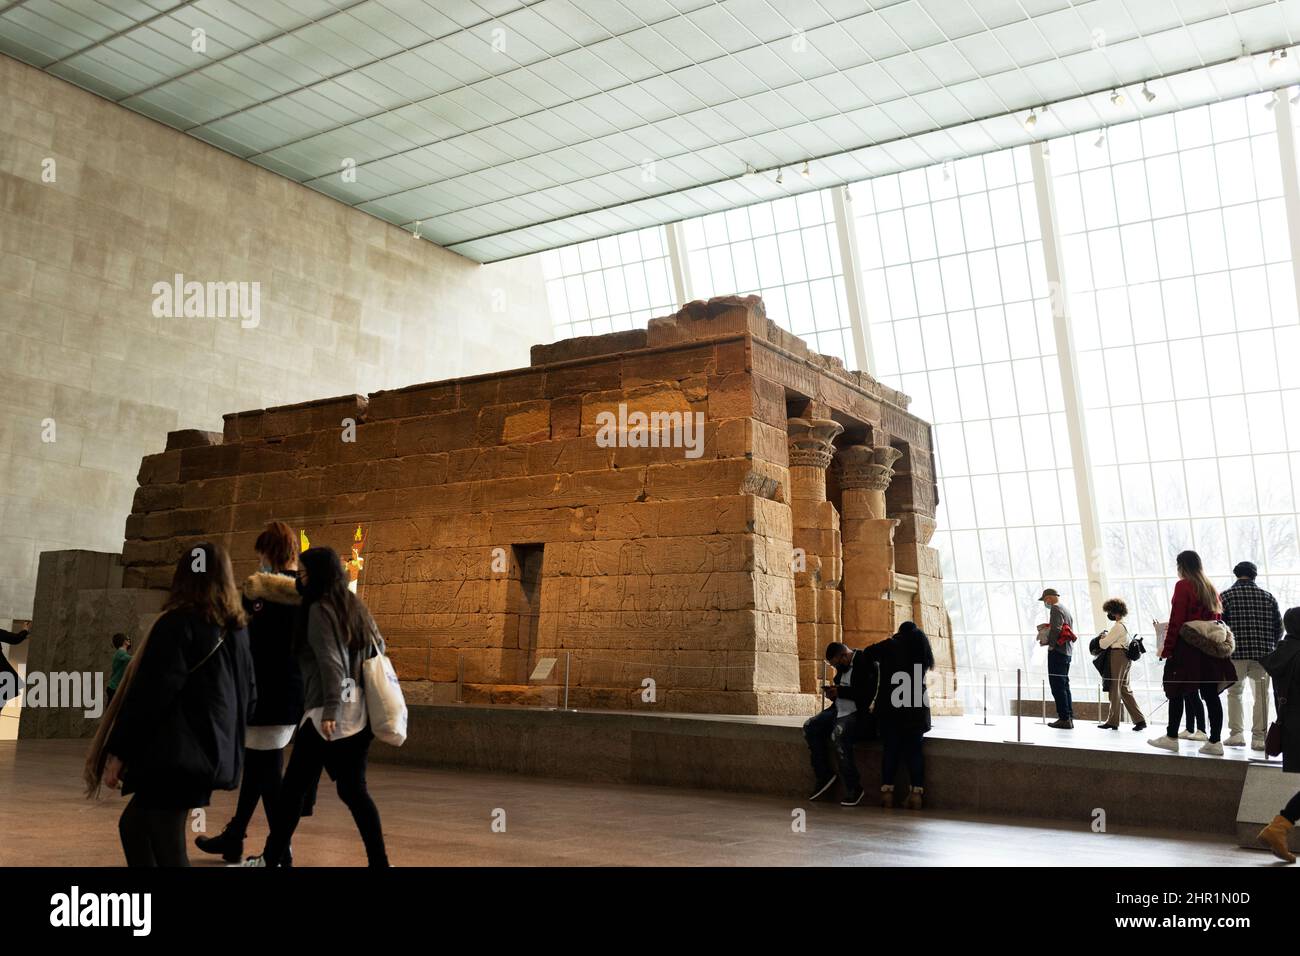 El Templo de Dendur en el Museo Metropolitano de Arte en la ciudad de Nueva York, Estados Unidos. Este templo egipcio data del 15 a.C. y fue construido por los romanos. Foto de stock